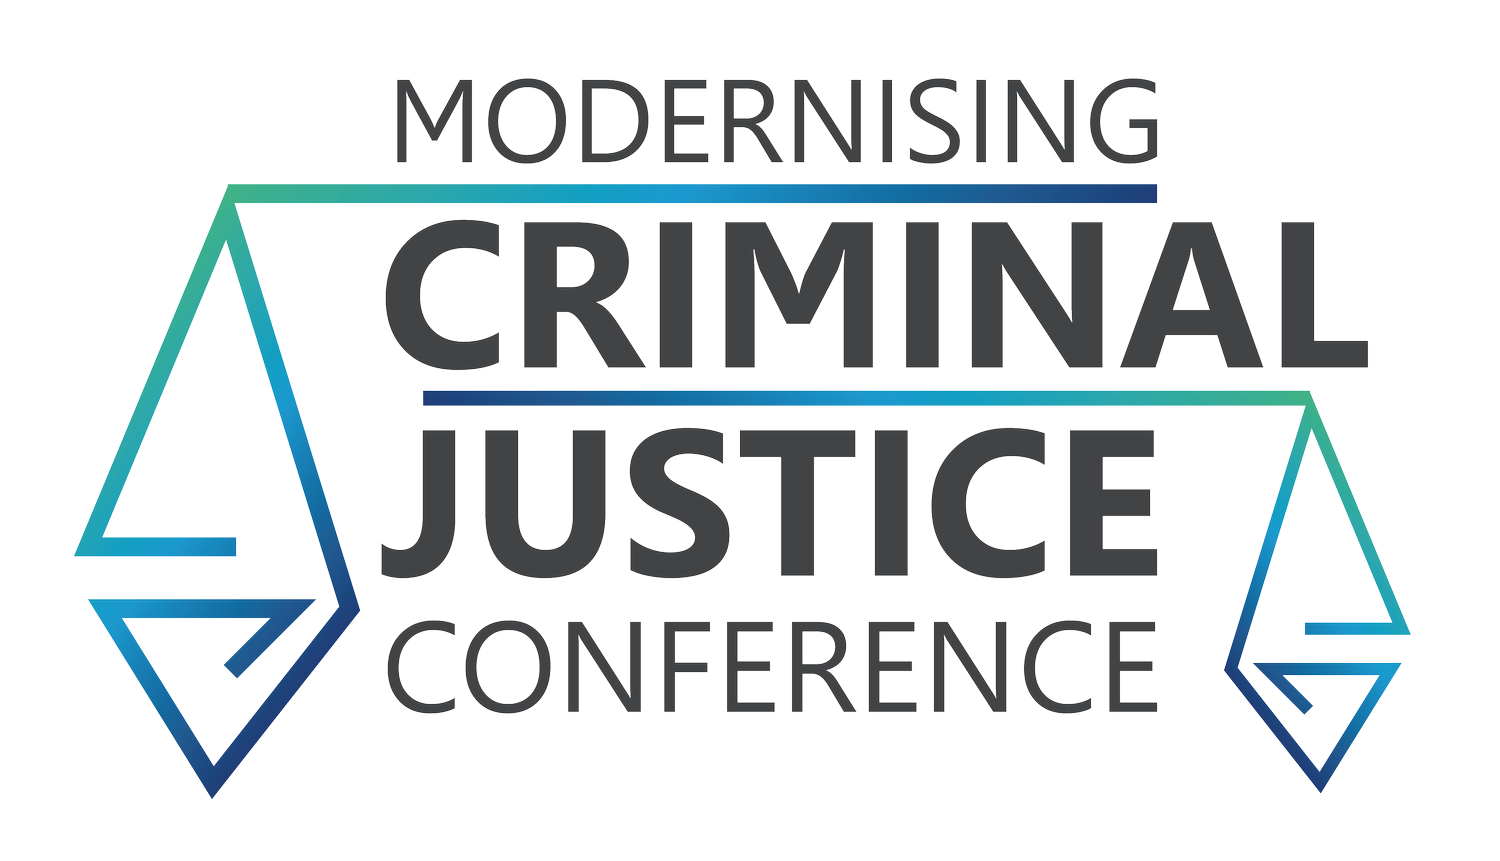 Modernising Criminal Justice Conference